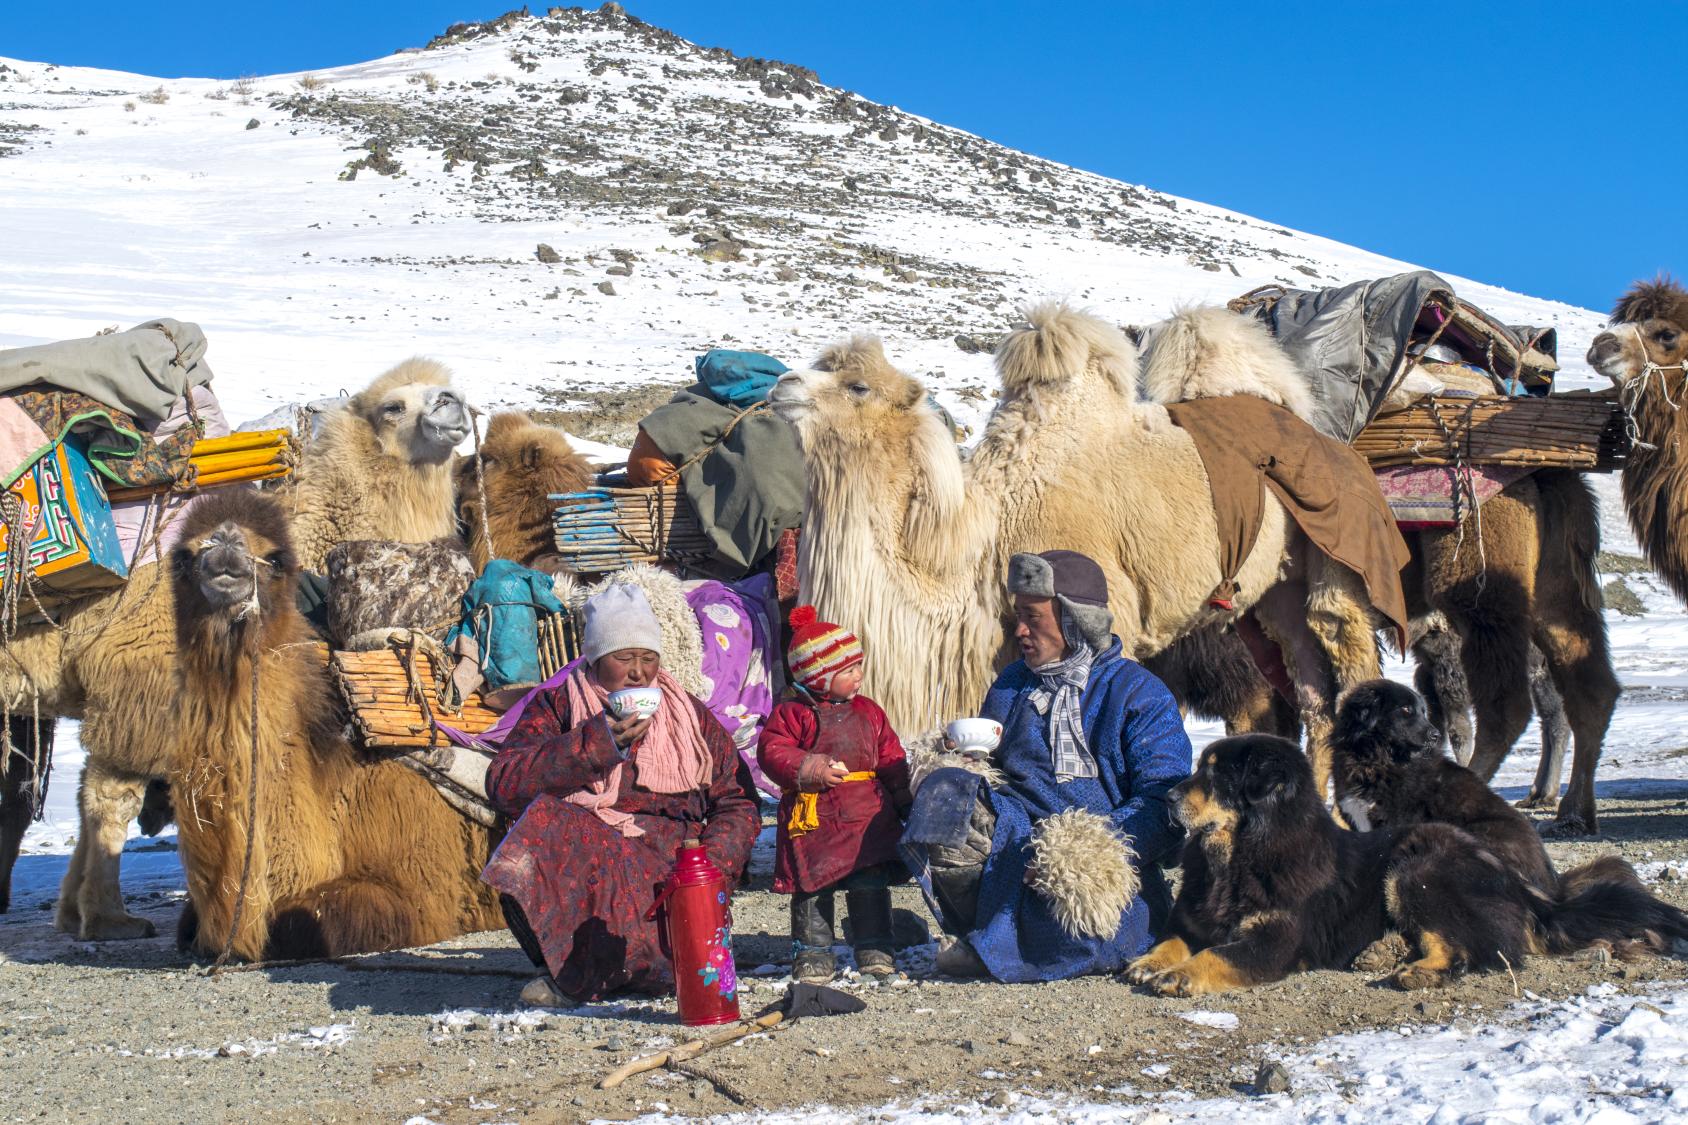 Une famille nomade de Mongolie composée d'un homme, d'une femme et d'un petit enfant emmitouflés dans des vêtements épais se repose en buvant du thé, entourée de deux chiens noirs et de plusieurs chapeaux. En arrière-plan s'élève une colline enneigée.